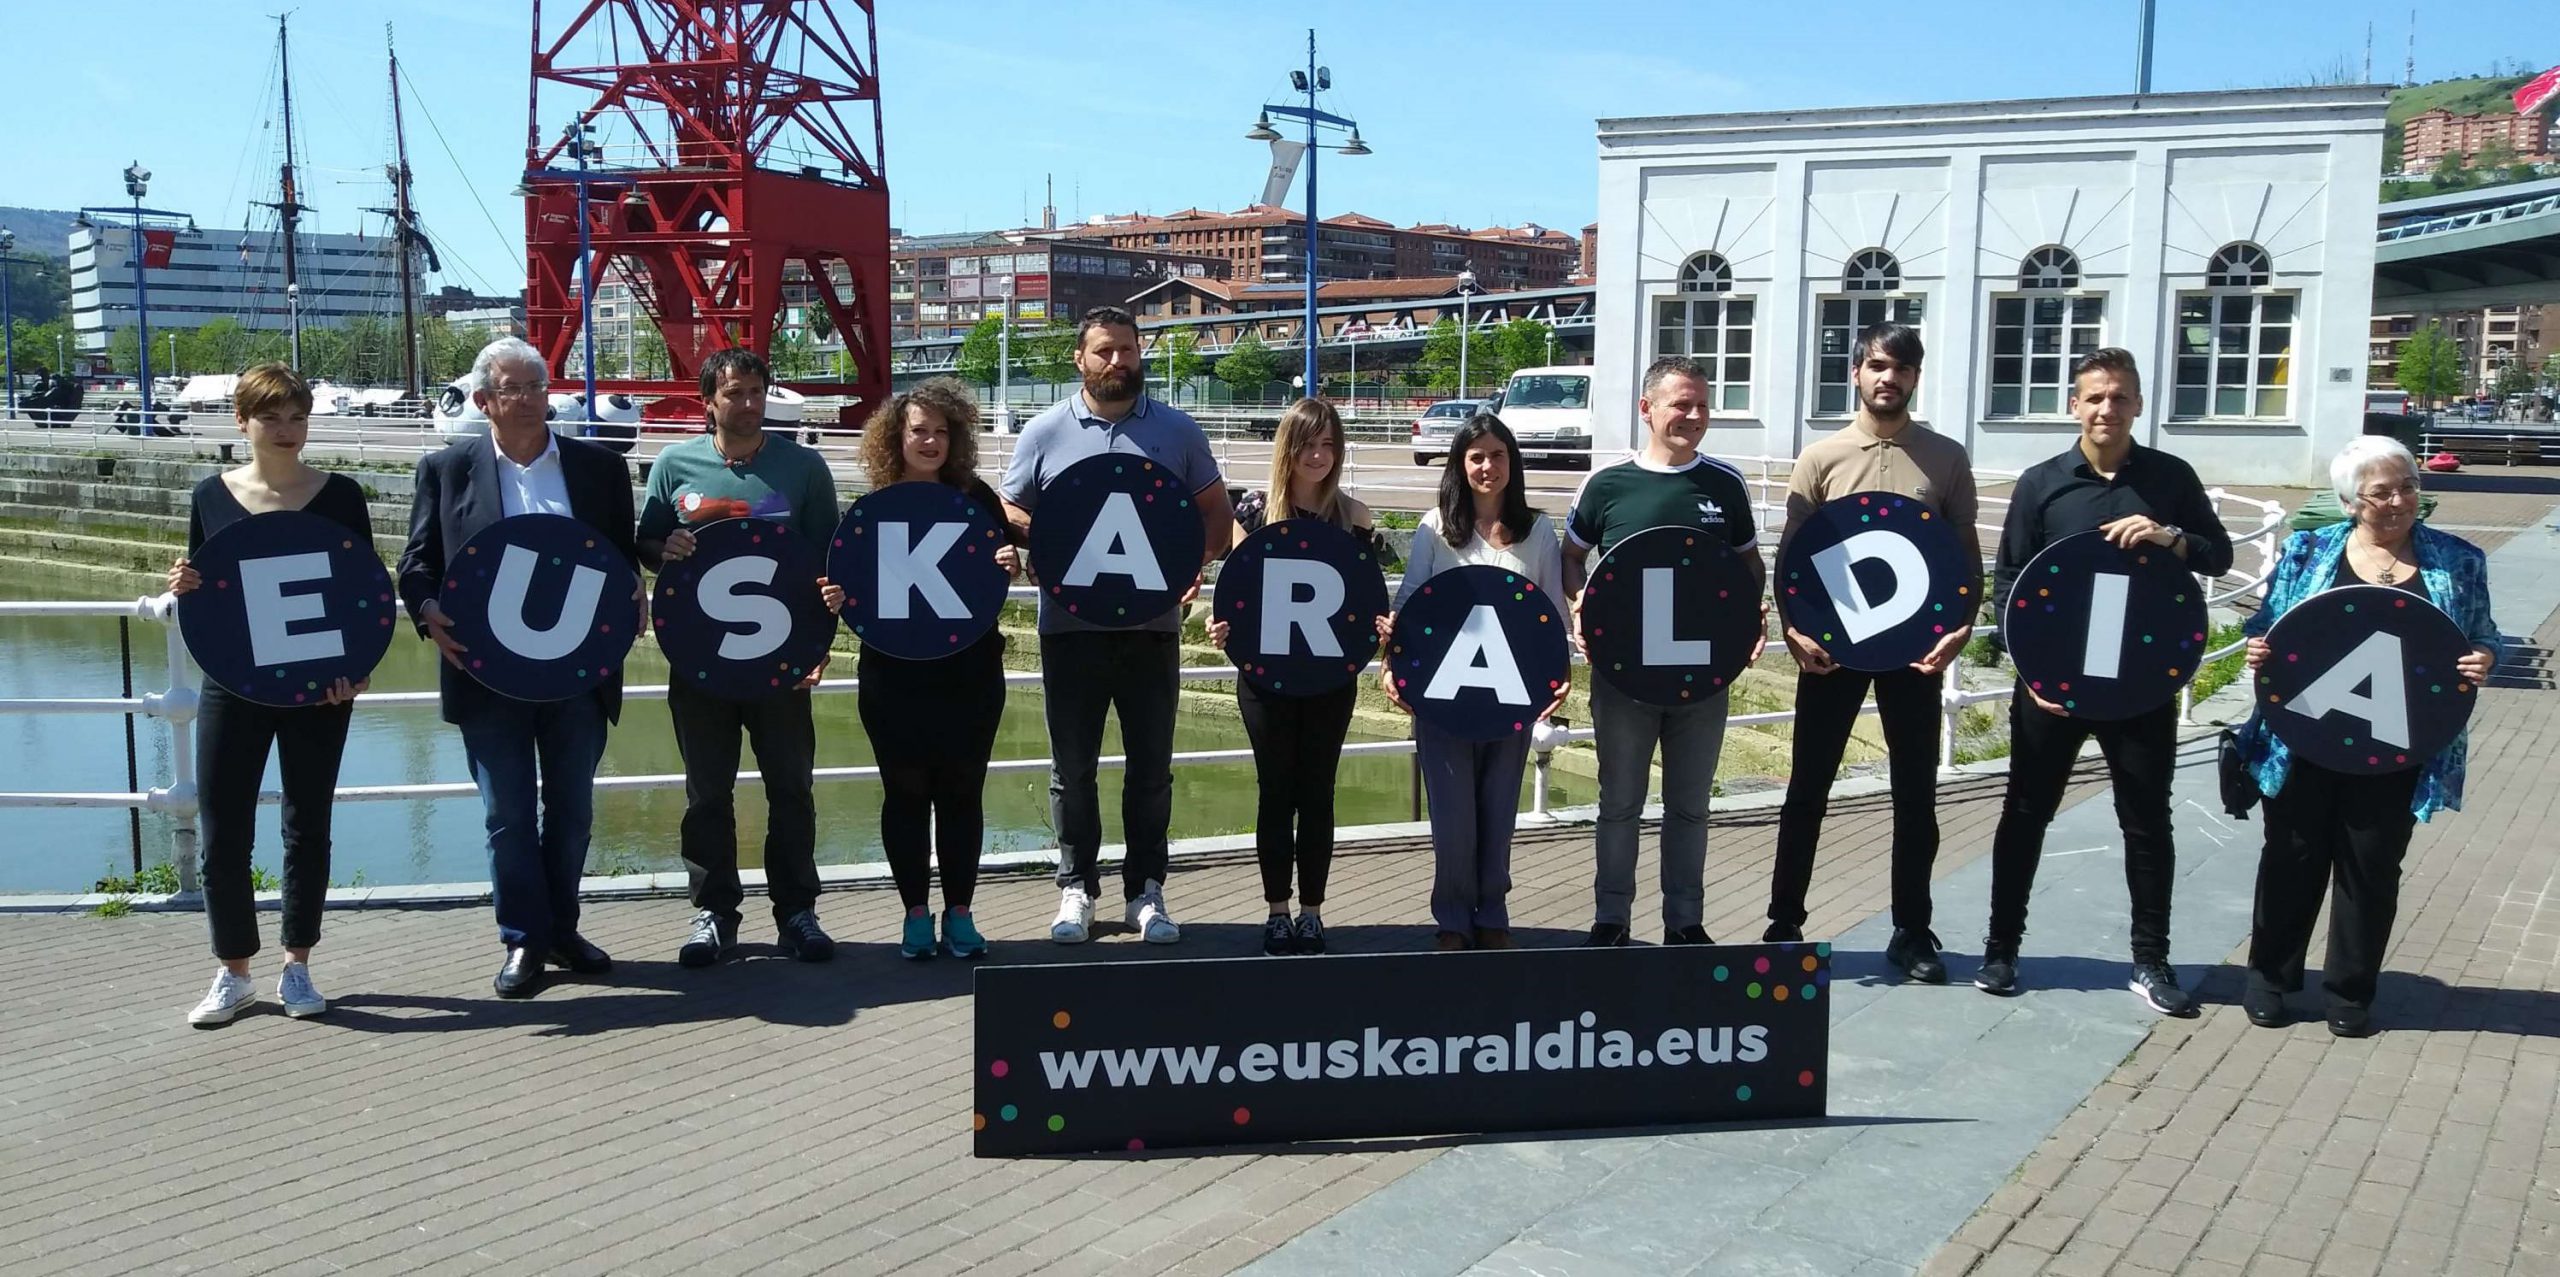 Euskaraldia 2020: Cientos de empresas y entidades apoyan la nueva edición